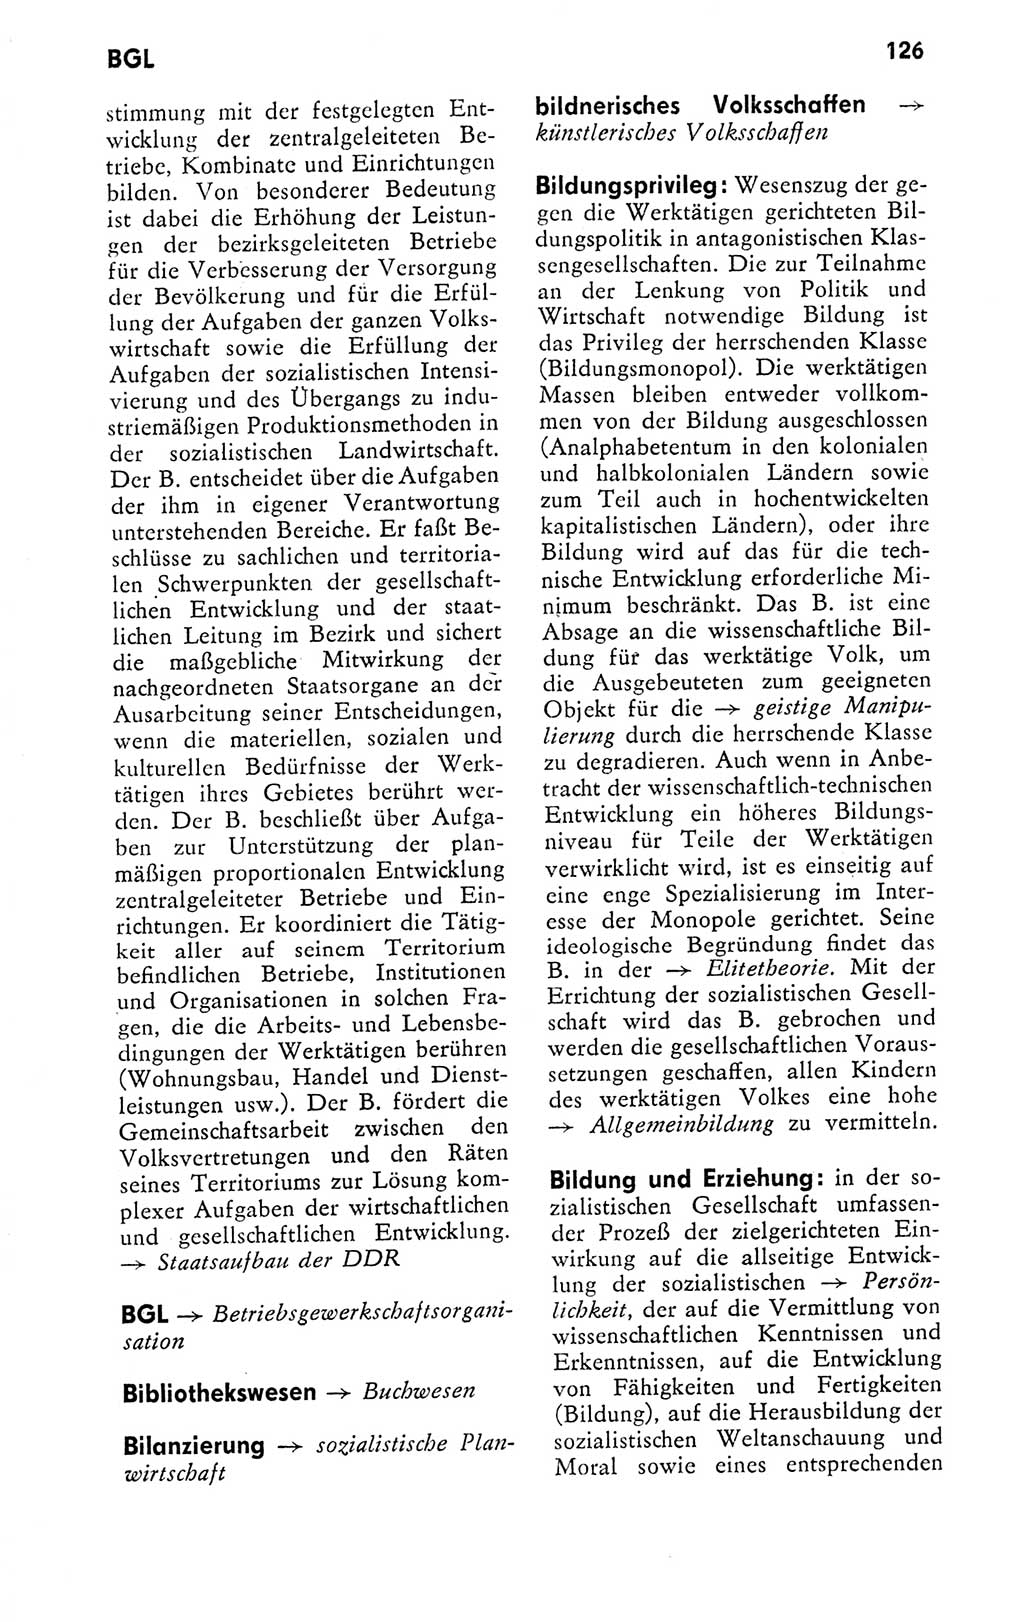 Kleines politisches Wörterbuch [Deutsche Demokratische Republik (DDR)] 1978, Seite 126 (Kl. pol. Wb. DDR 1978, S. 126)